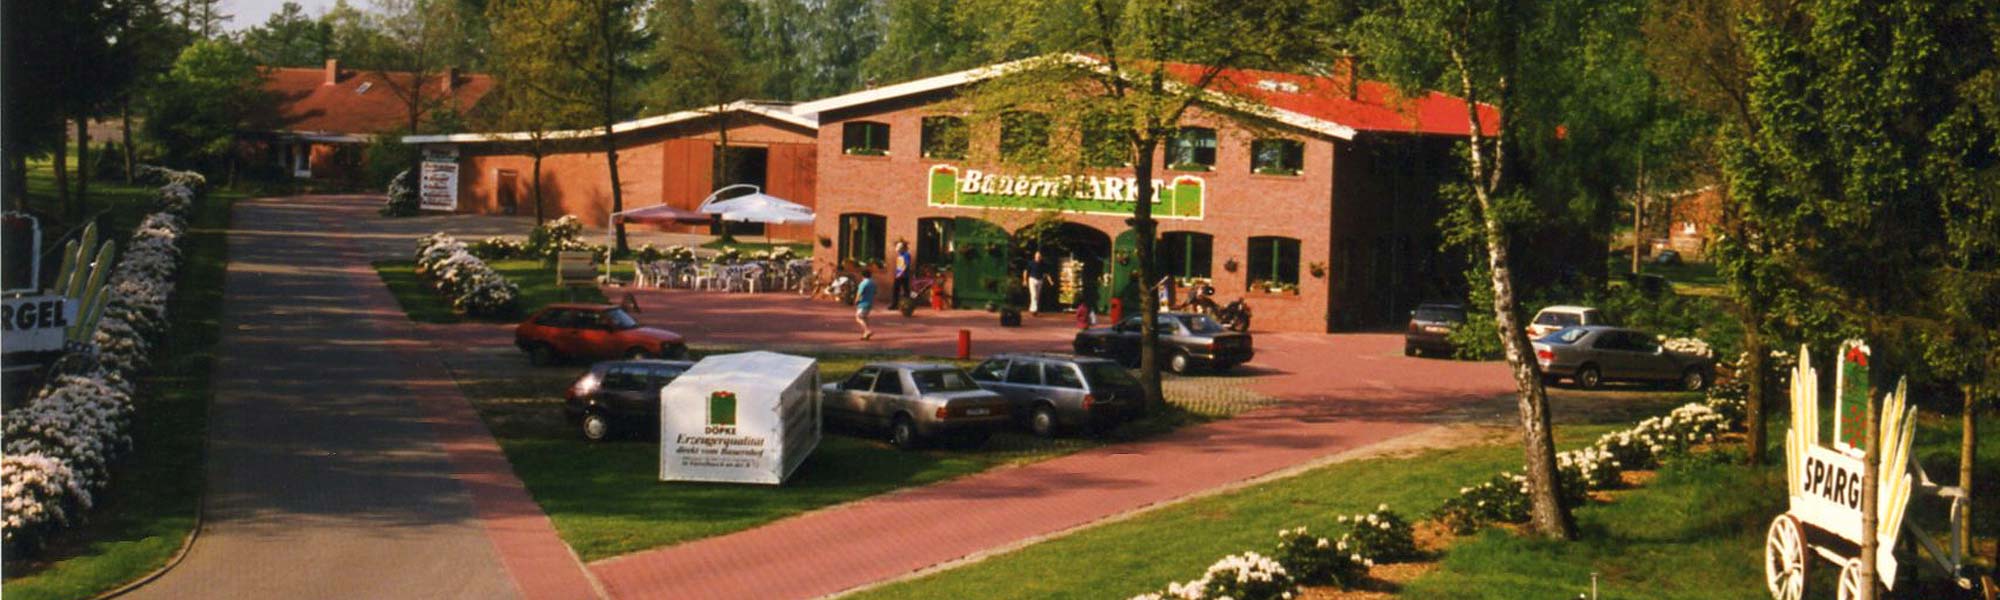 der Hofladen im Jahr 1998 mit Parktplatz und Terrasse